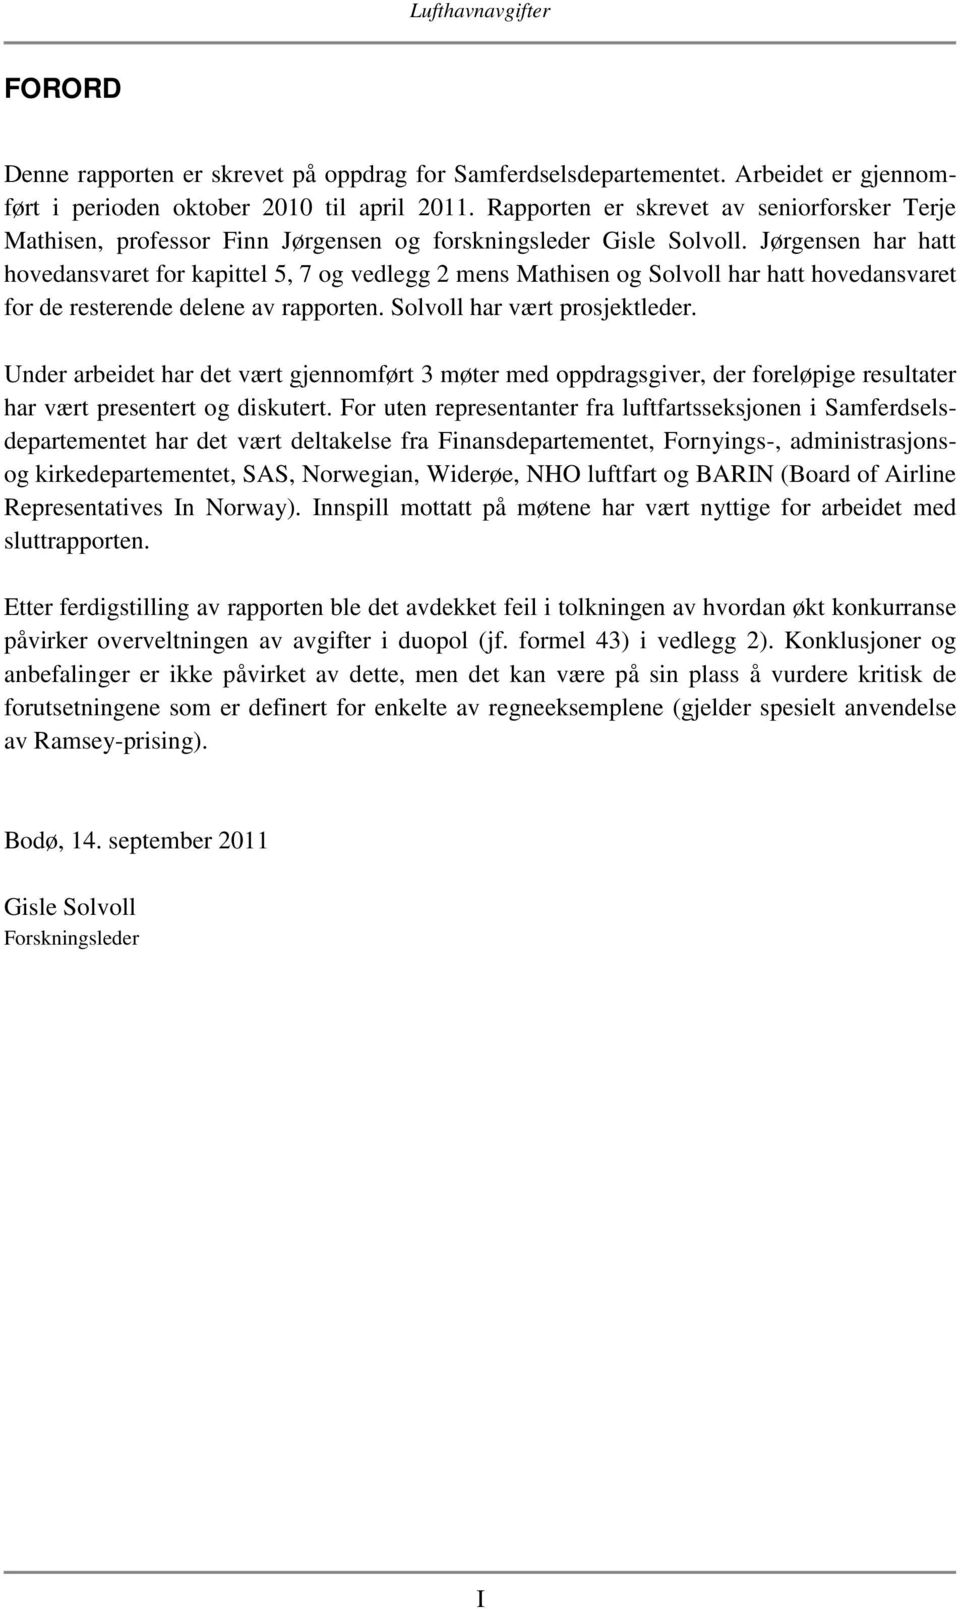 Jørgensen har hatt hovedansvaret for kapittel 5, 7 og vedlegg 2 mens Mathisen og Solvoll har hatt hovedansvaret for de resterende delene av rapporten. Solvoll har vært prosjektleder.